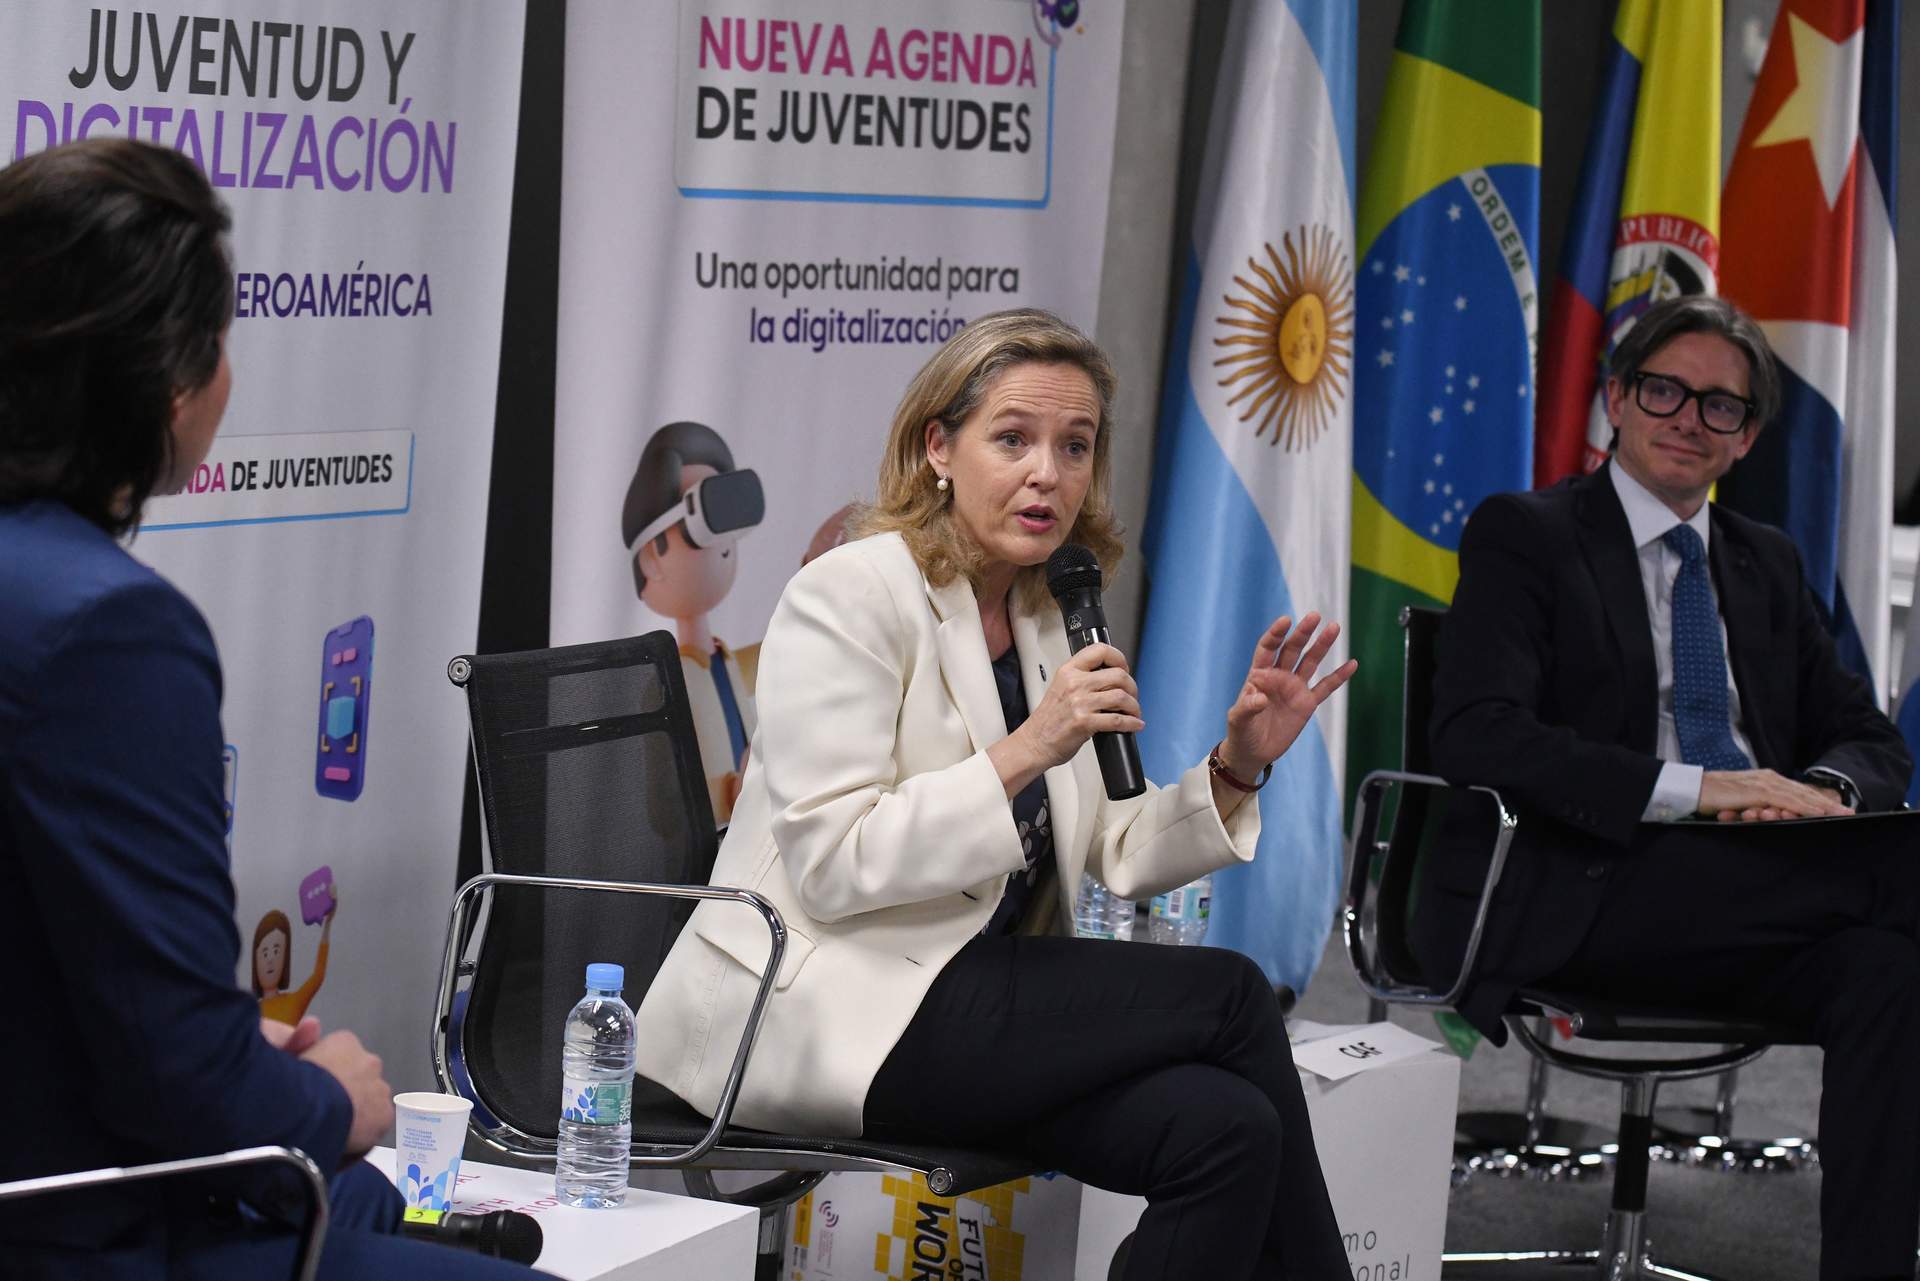 La vicepresidenta primera y ministra de Asuntos Económicos y Transformación Digital, Nadia Calviño.